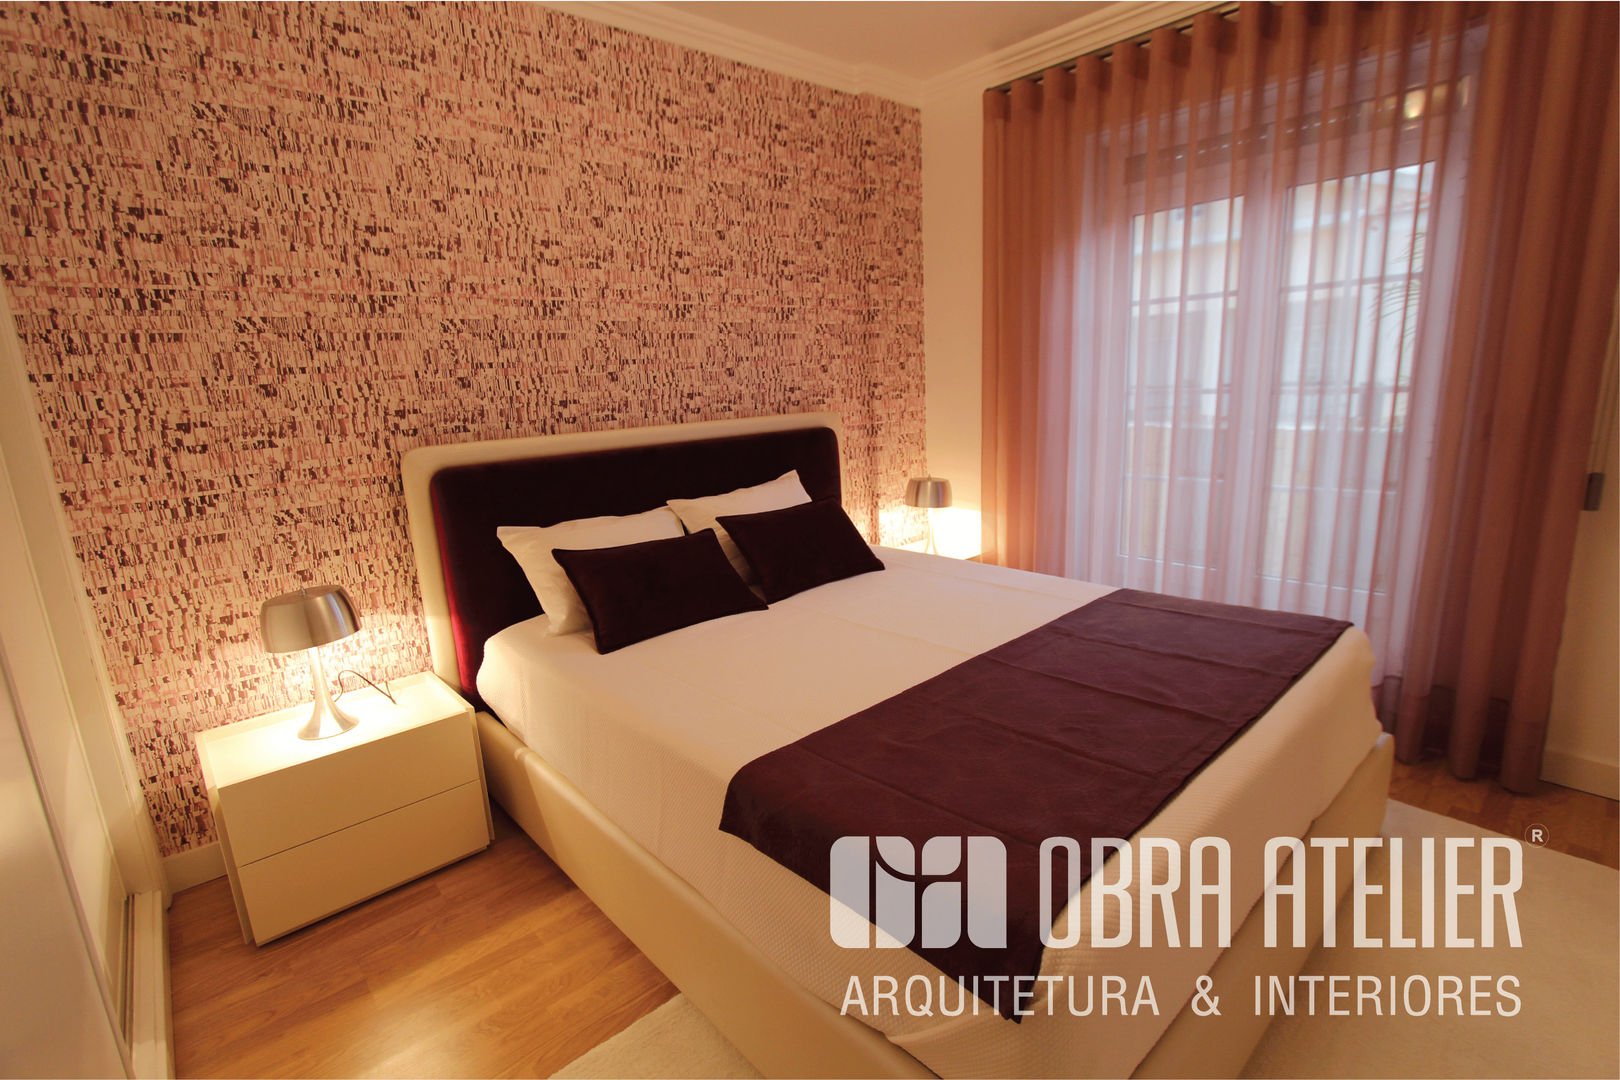 Projeto reformulação de interiores em Alcabideche, Cascais, OBRA ATELIER - Arquitetura & Interiores OBRA ATELIER - Arquitetura & Interiores Modern style bedroom